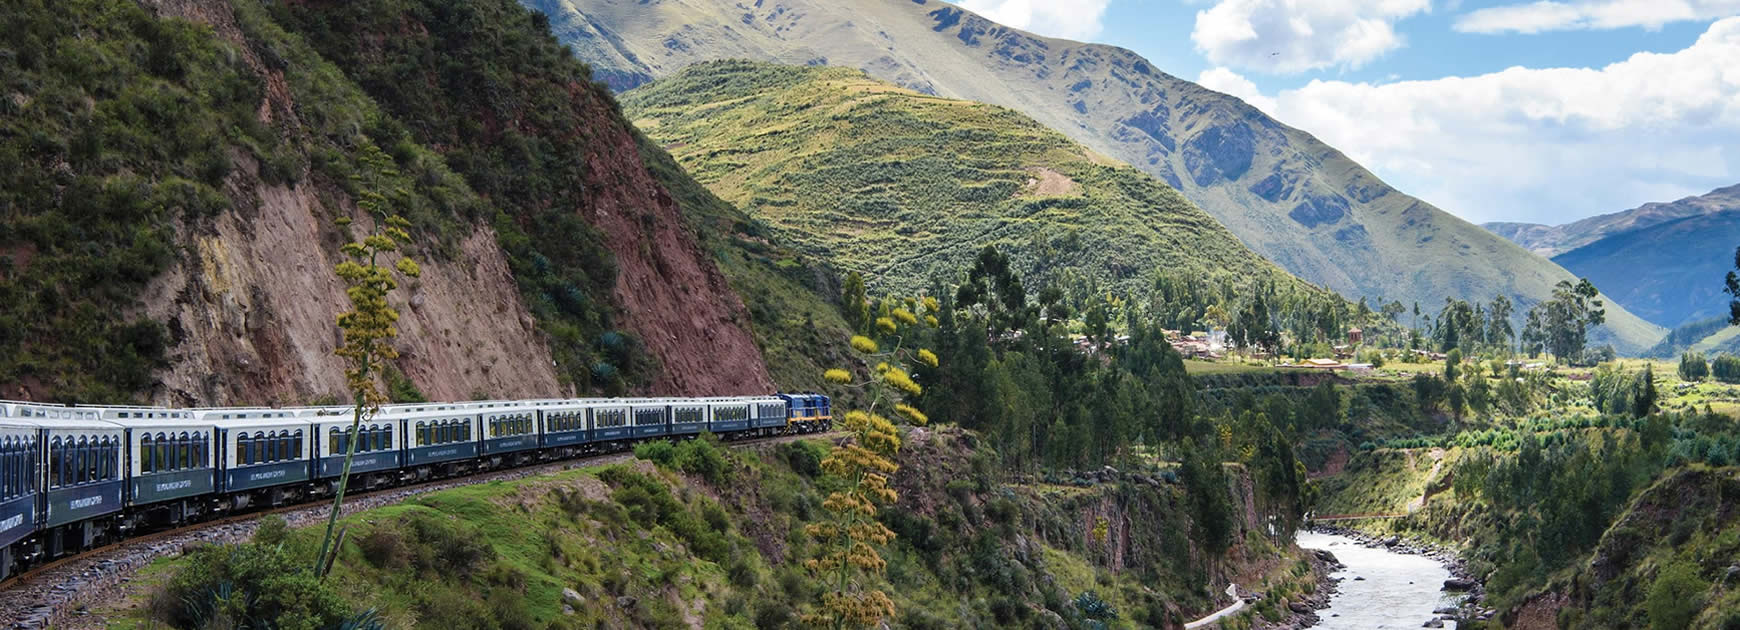 Tren Belmond Andean Explorer